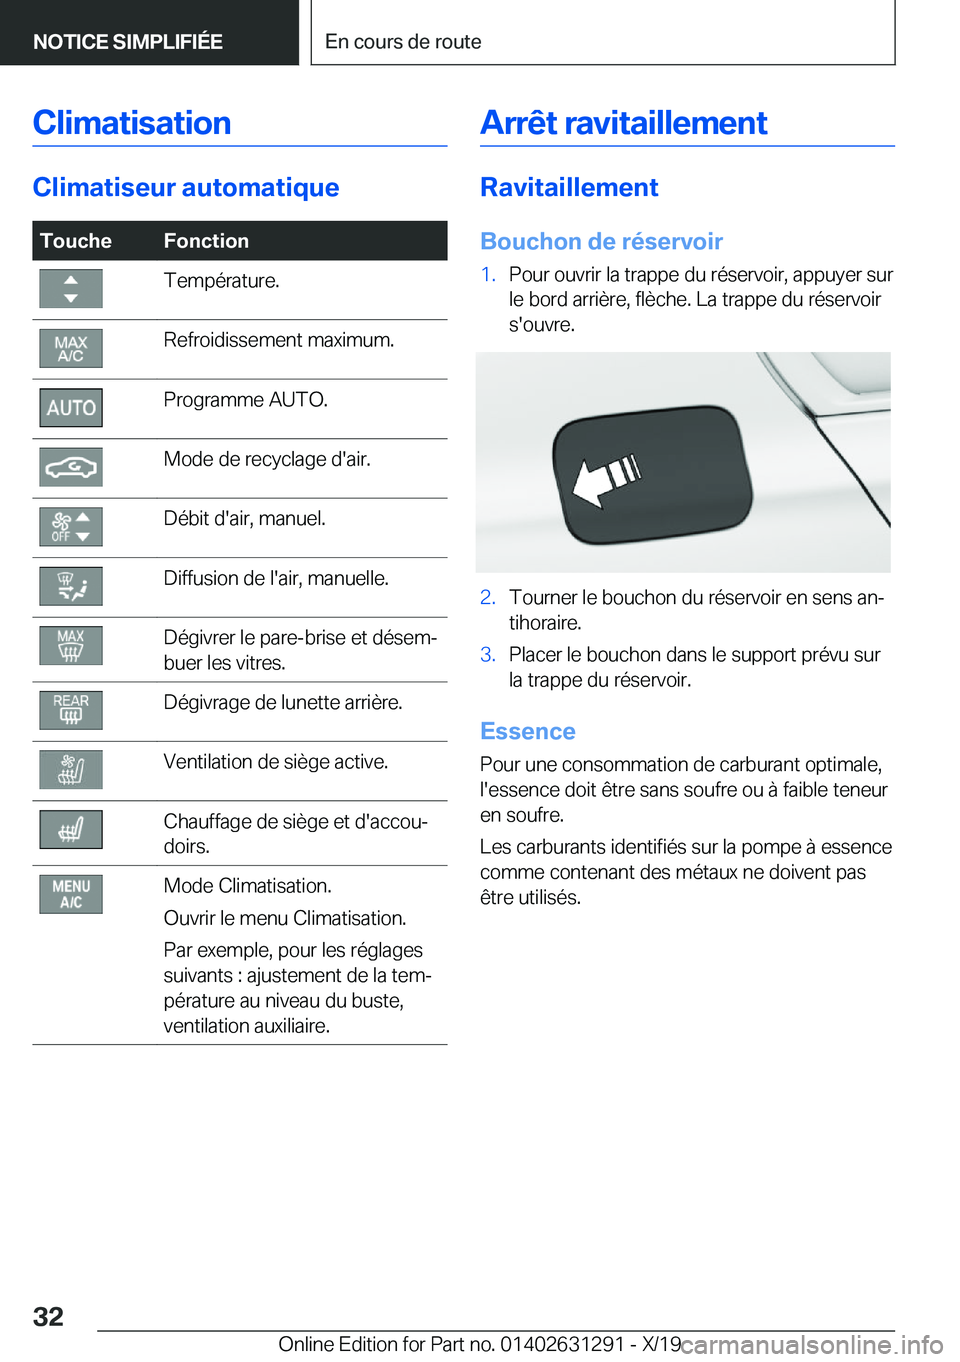 BMW M8 2020  Notices Demploi (in French) �C�l�i�m�a�t�i�s�a�t�i�o�n
�C�l�i�m�a�t�i�s�e�u�r��a�u�t�o�m�a�t�i�q�u�e
�T�o�u�c�h�e�F�o�n�c�t�i�o�n�T�e�m�p�é�r�a�t�u�r�e�.�R�e�f�r�o�i�d�i�s�s�e�m�e�n�t��m�a�x�i�m�u�m�.�P�r�o�g�r�a�m�m�e��A�U�